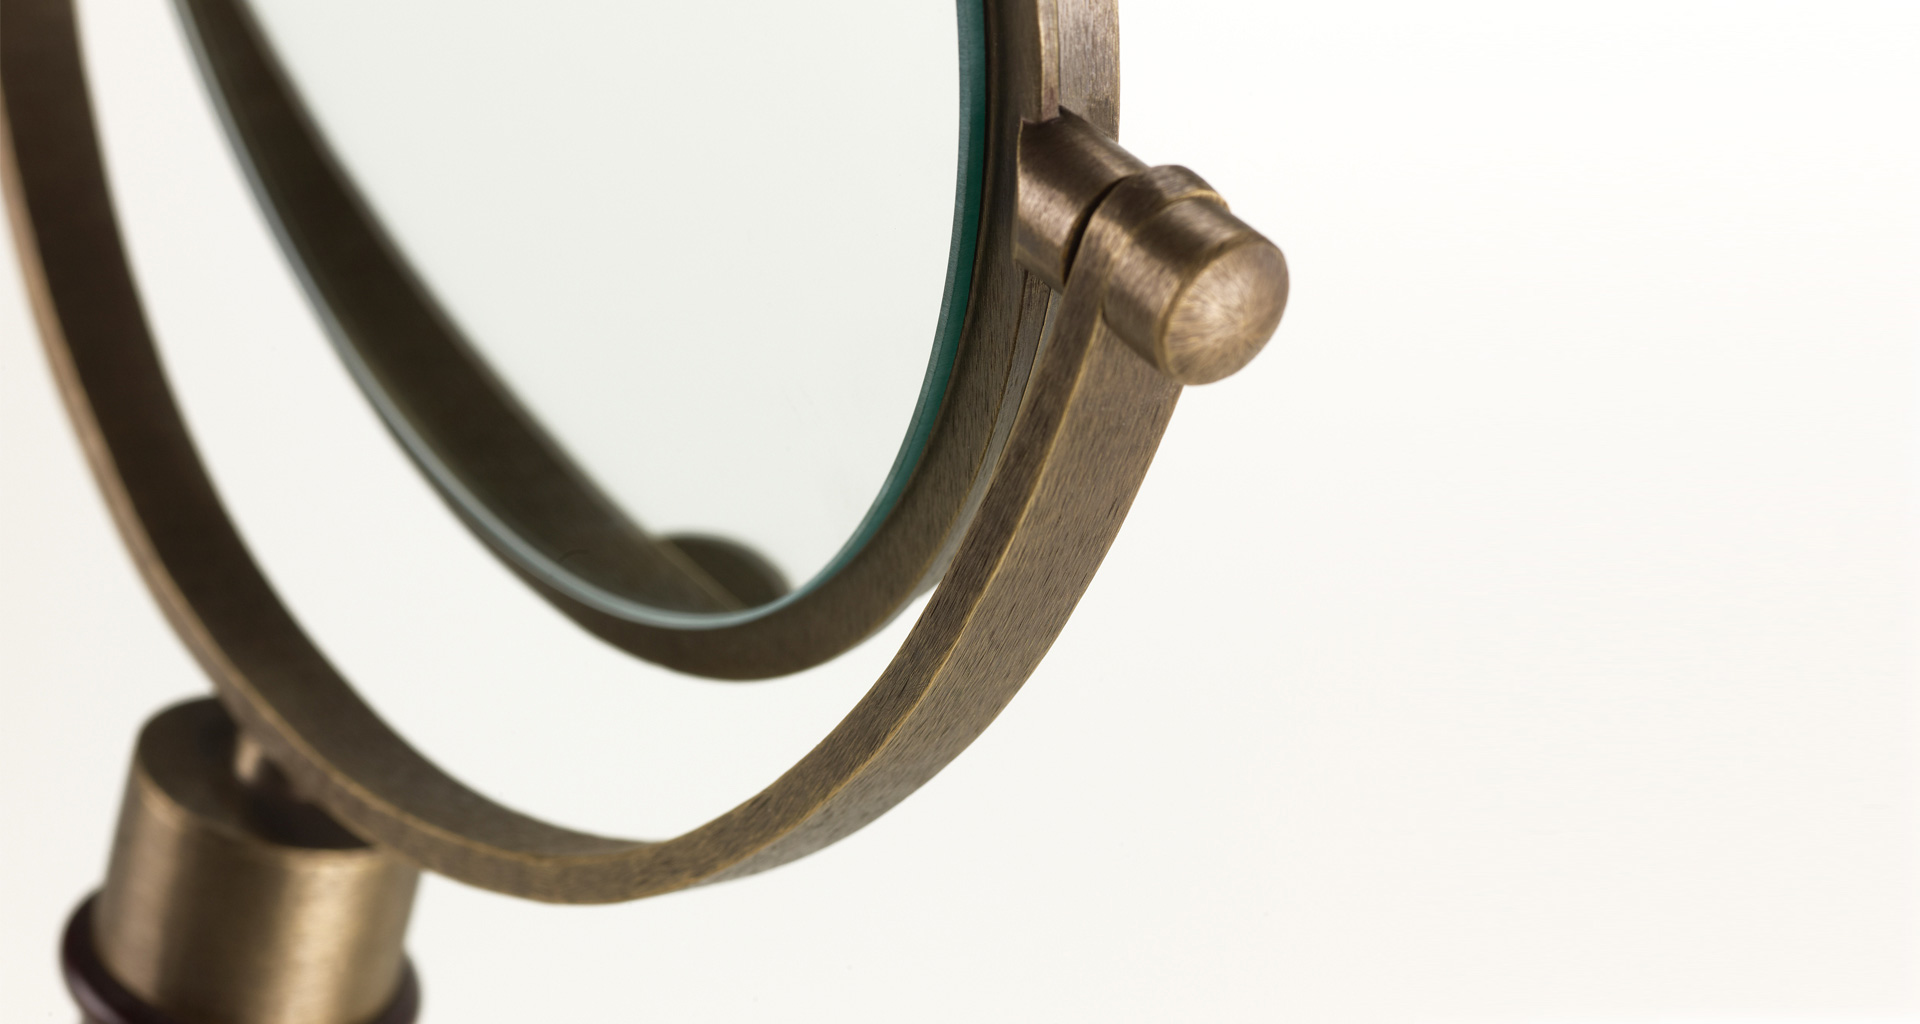 Dettaglio di Geraldine, specchio da tavolo doppio basculante in bronzo e legno, del catalogo di Promemoria | Promemoria